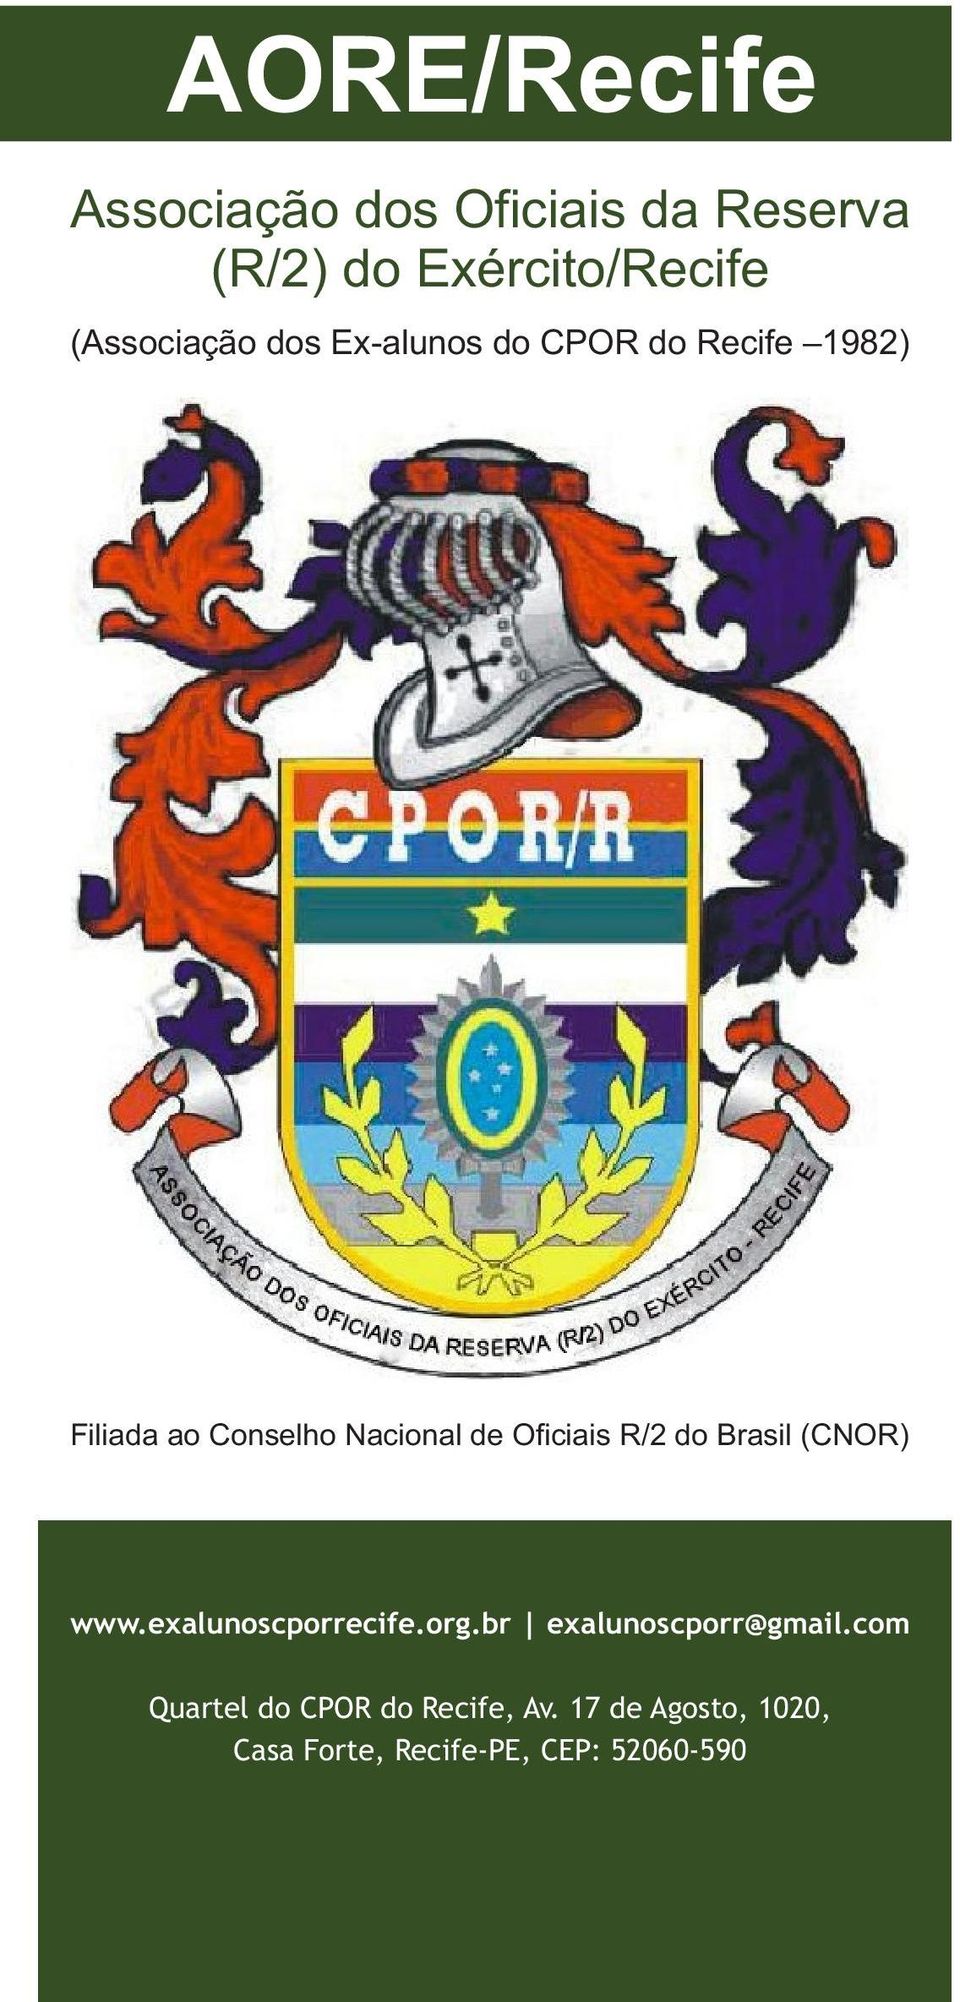 Oficiais R/2 do Brasil (CNOR) www.exalunoscporrecife.org.br exalunoscporr@gmail.